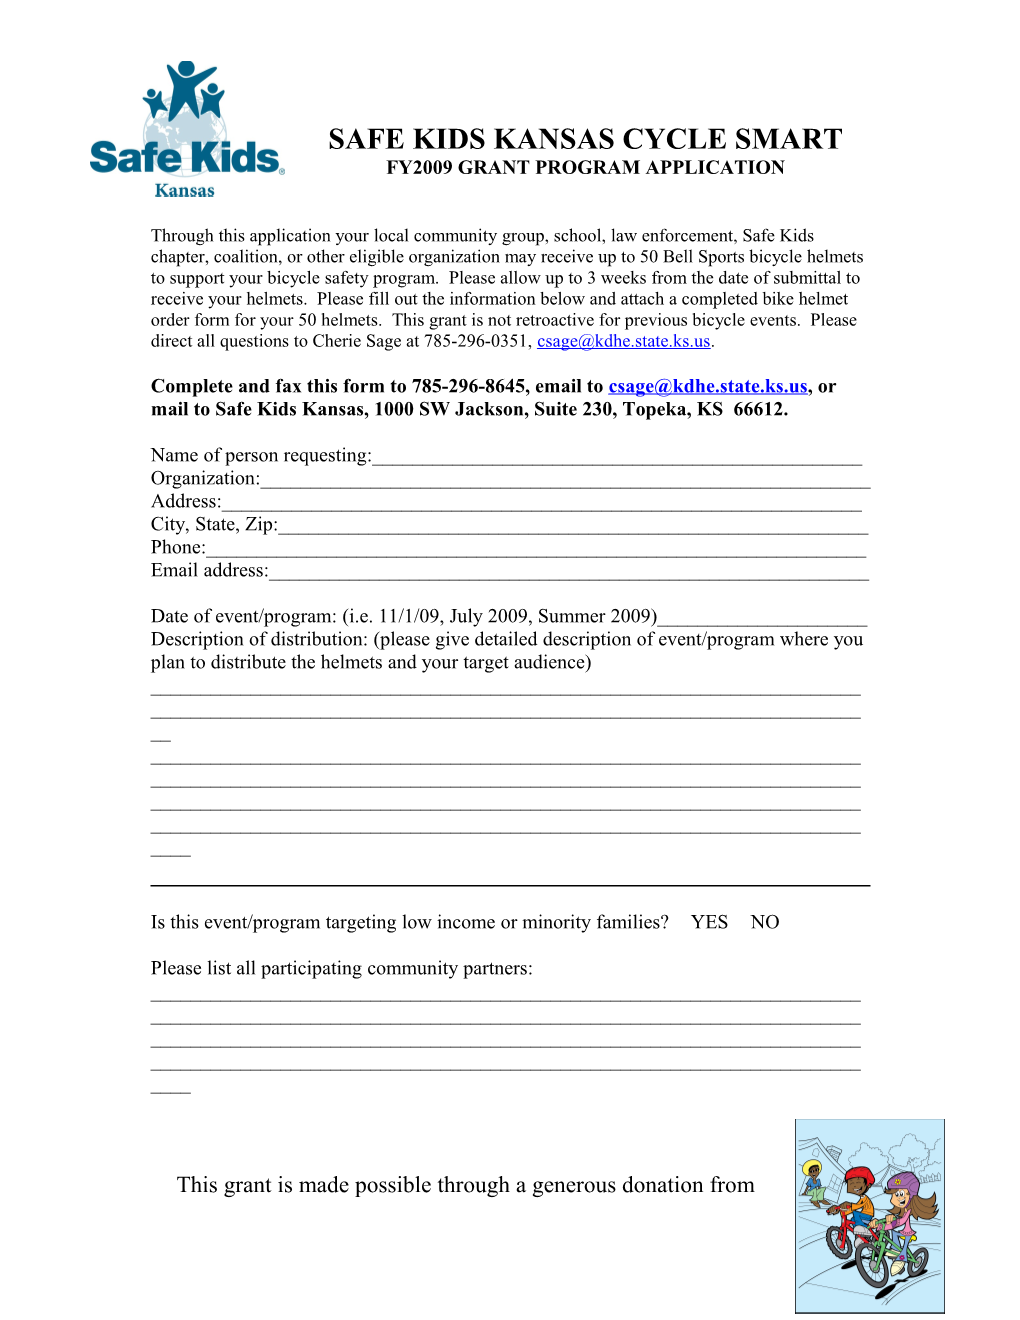 Kansas Safe Kids Cycle Smart